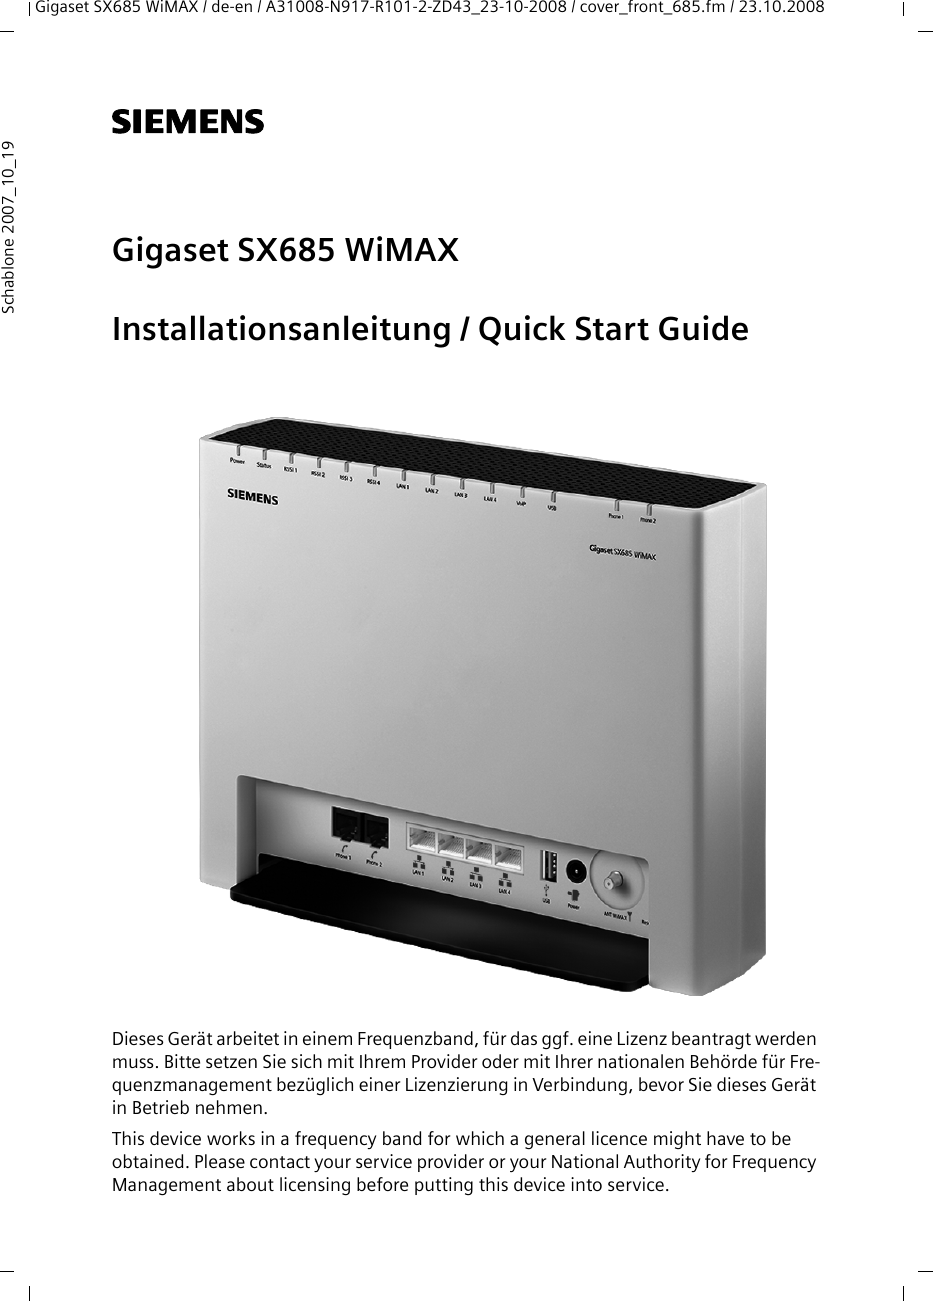 Gigaset SX685 WiMAX / de-en / A31008-N917-R101-2-ZD43_23-10-2008 / cover_front_685.fm / 23.10.2008Schablone 2007_10_19s Gigaset SX685 WiMAXInstallationsanleitung / Quick Start GuideDieses Gerät arbeitet in einem Frequenzband, für das ggf. eine Lizenz beantragt werden muss. Bitte setzen Sie sich mit Ihrem Provider oder mit Ihrer nationalen Behörde für Fre-quenzmanagement bezüglich einer Lizenzierung in Verbindung, bevor Sie dieses Gerät in Betrieb nehmen.This device works in a frequency band for which a general licence might have to be obtained. Please contact your service provider or your National Authority for Frequency Management about licensing before putting this device into service.